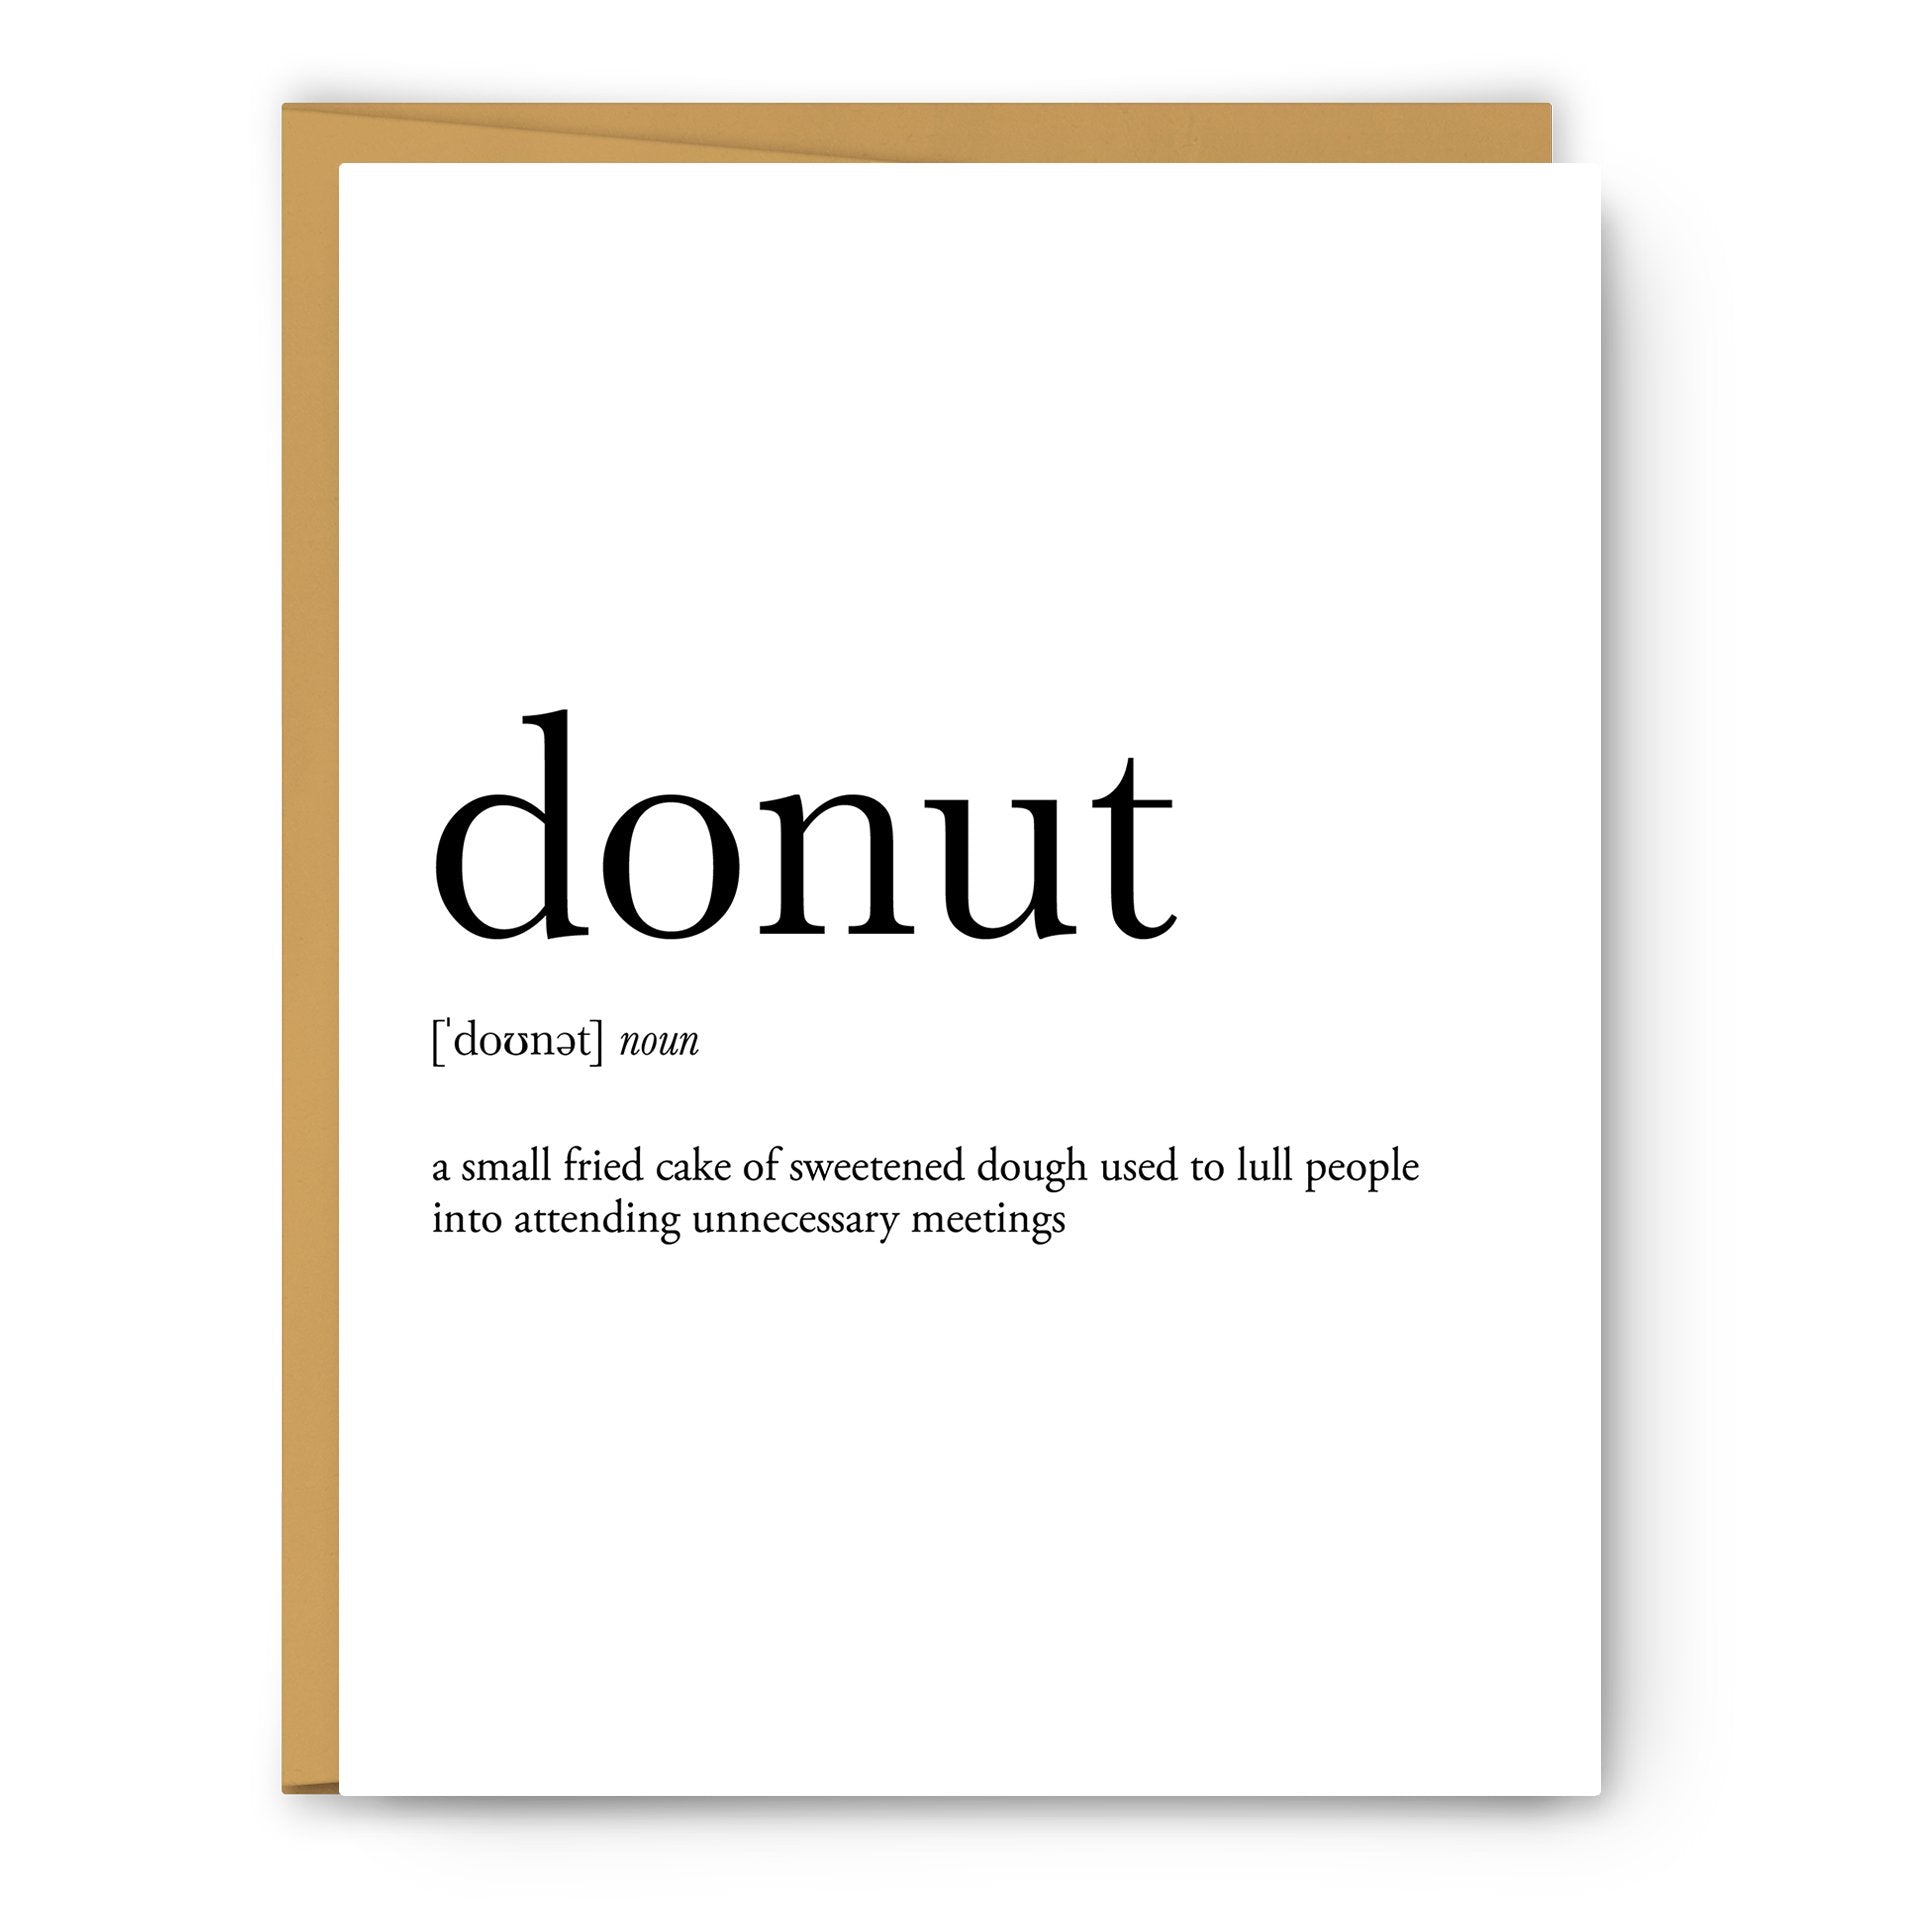 donut noun greeting card